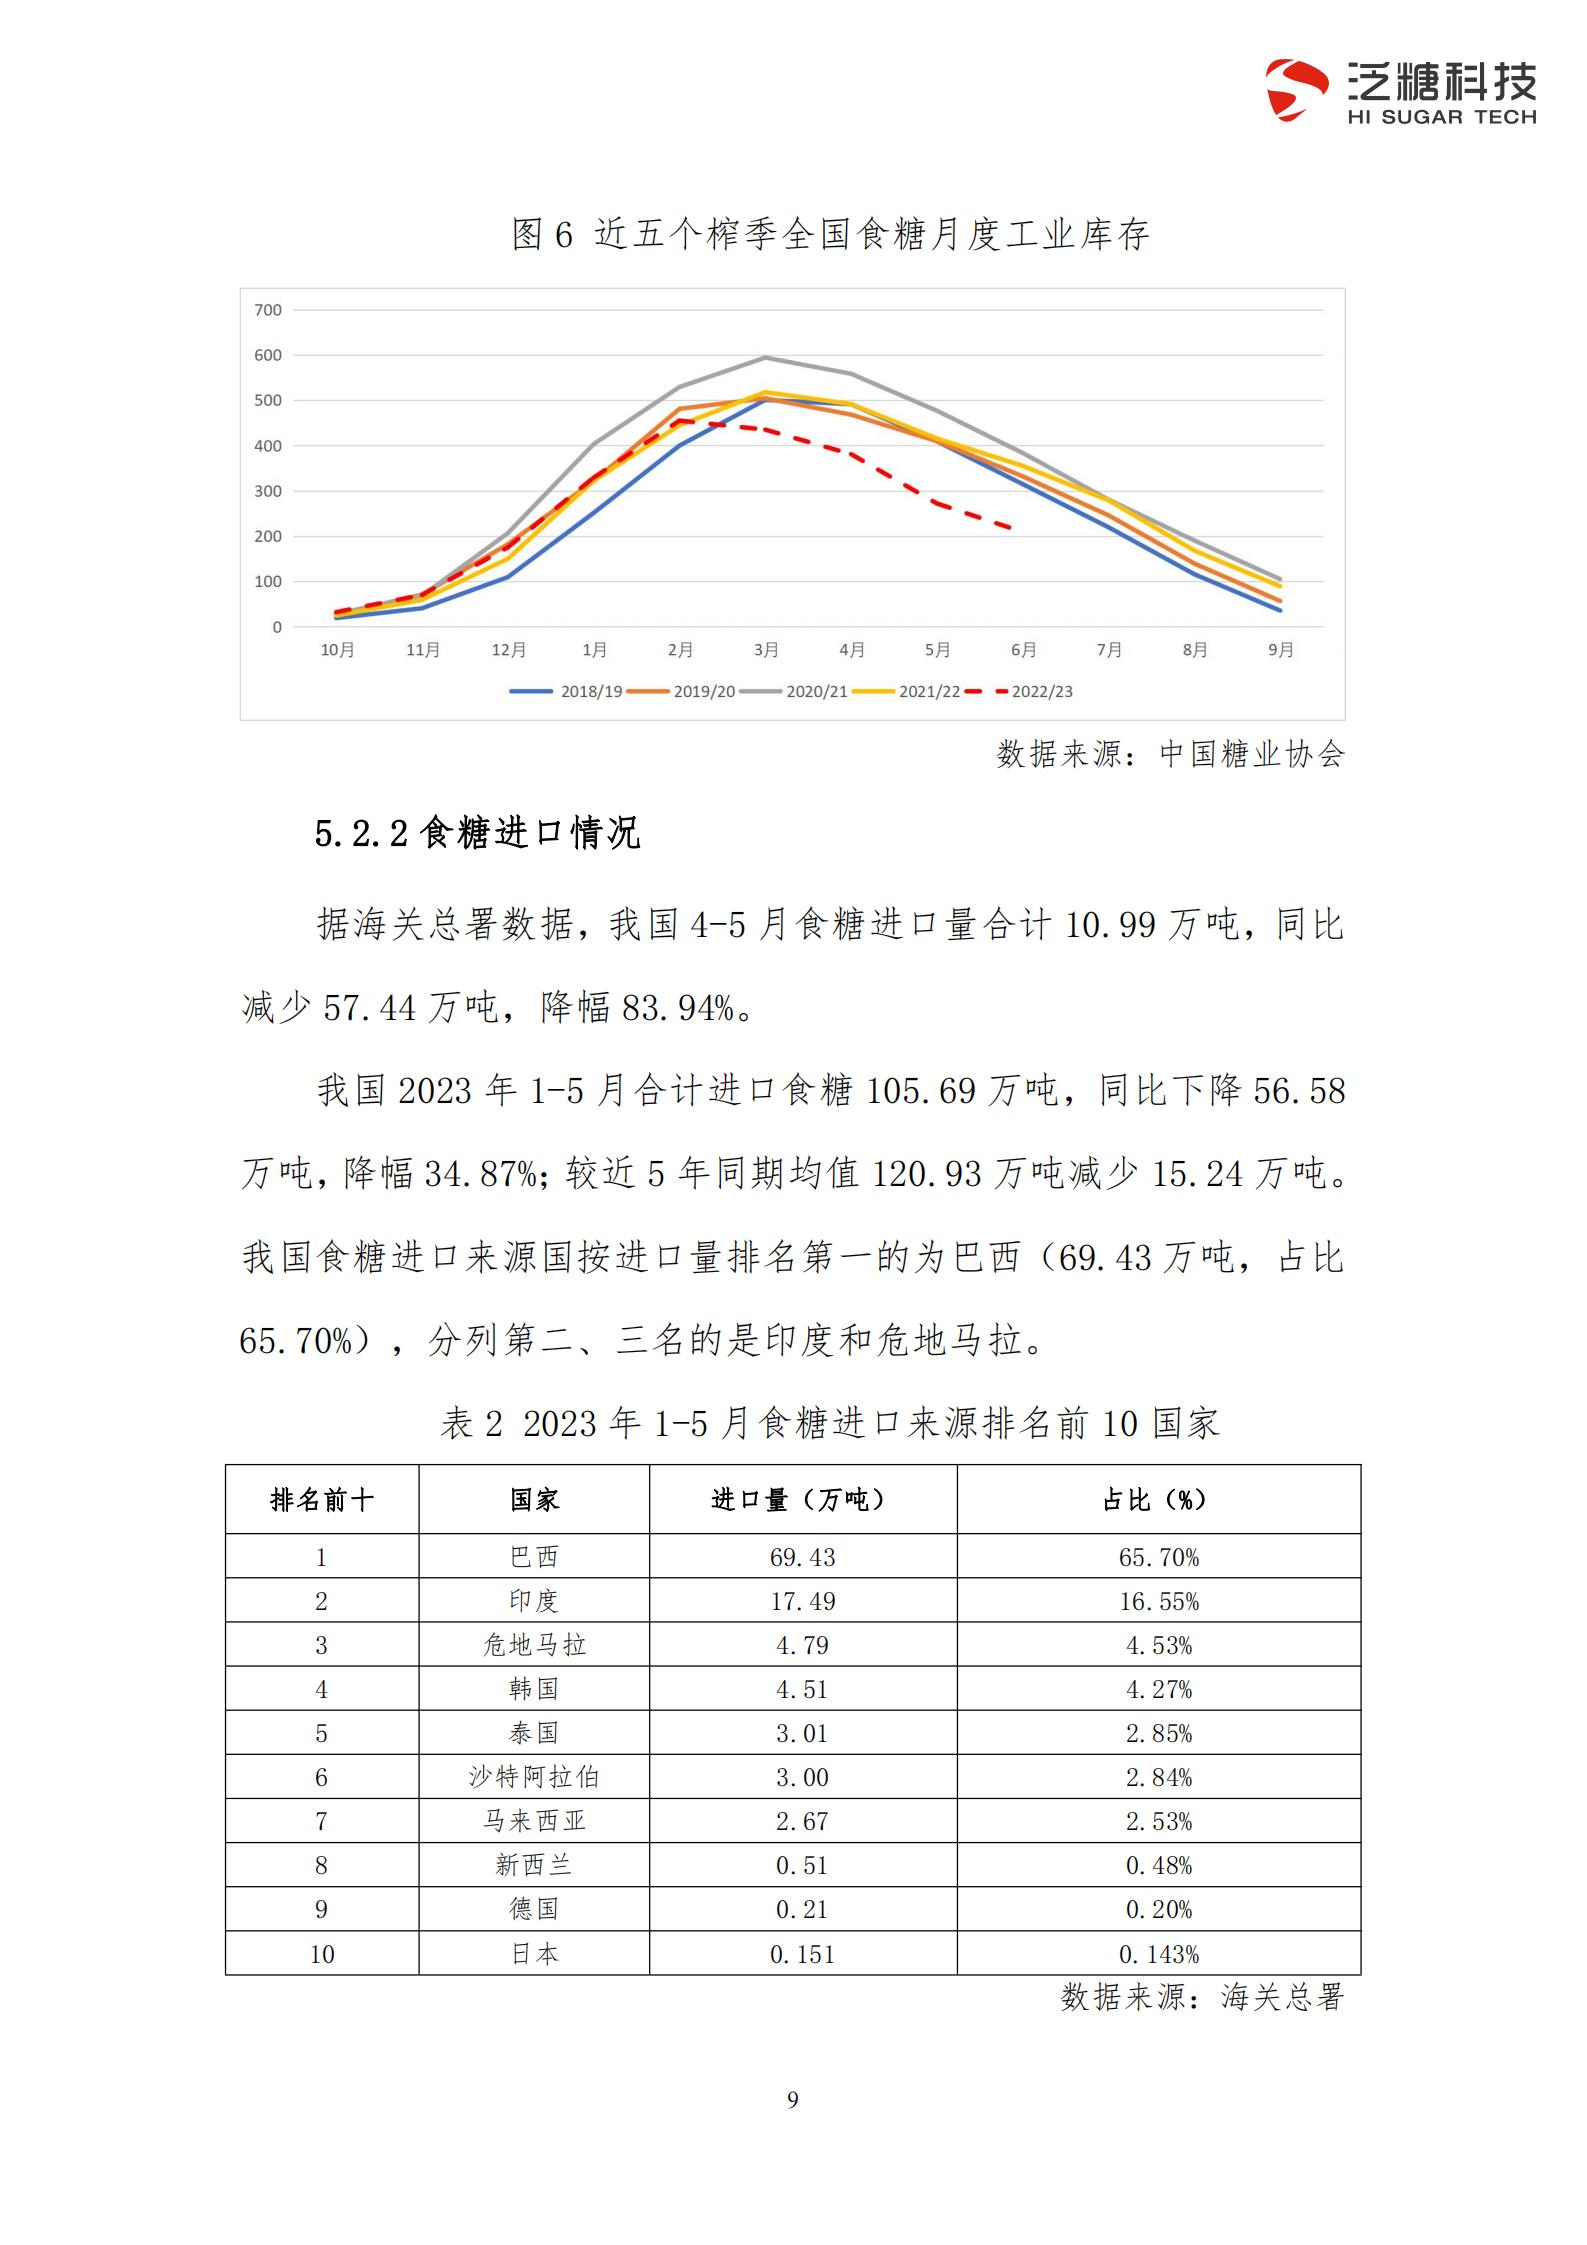 070909（简化版）广西食糖产业损害监测预警分析报告（2023年二季度）_11.jpg